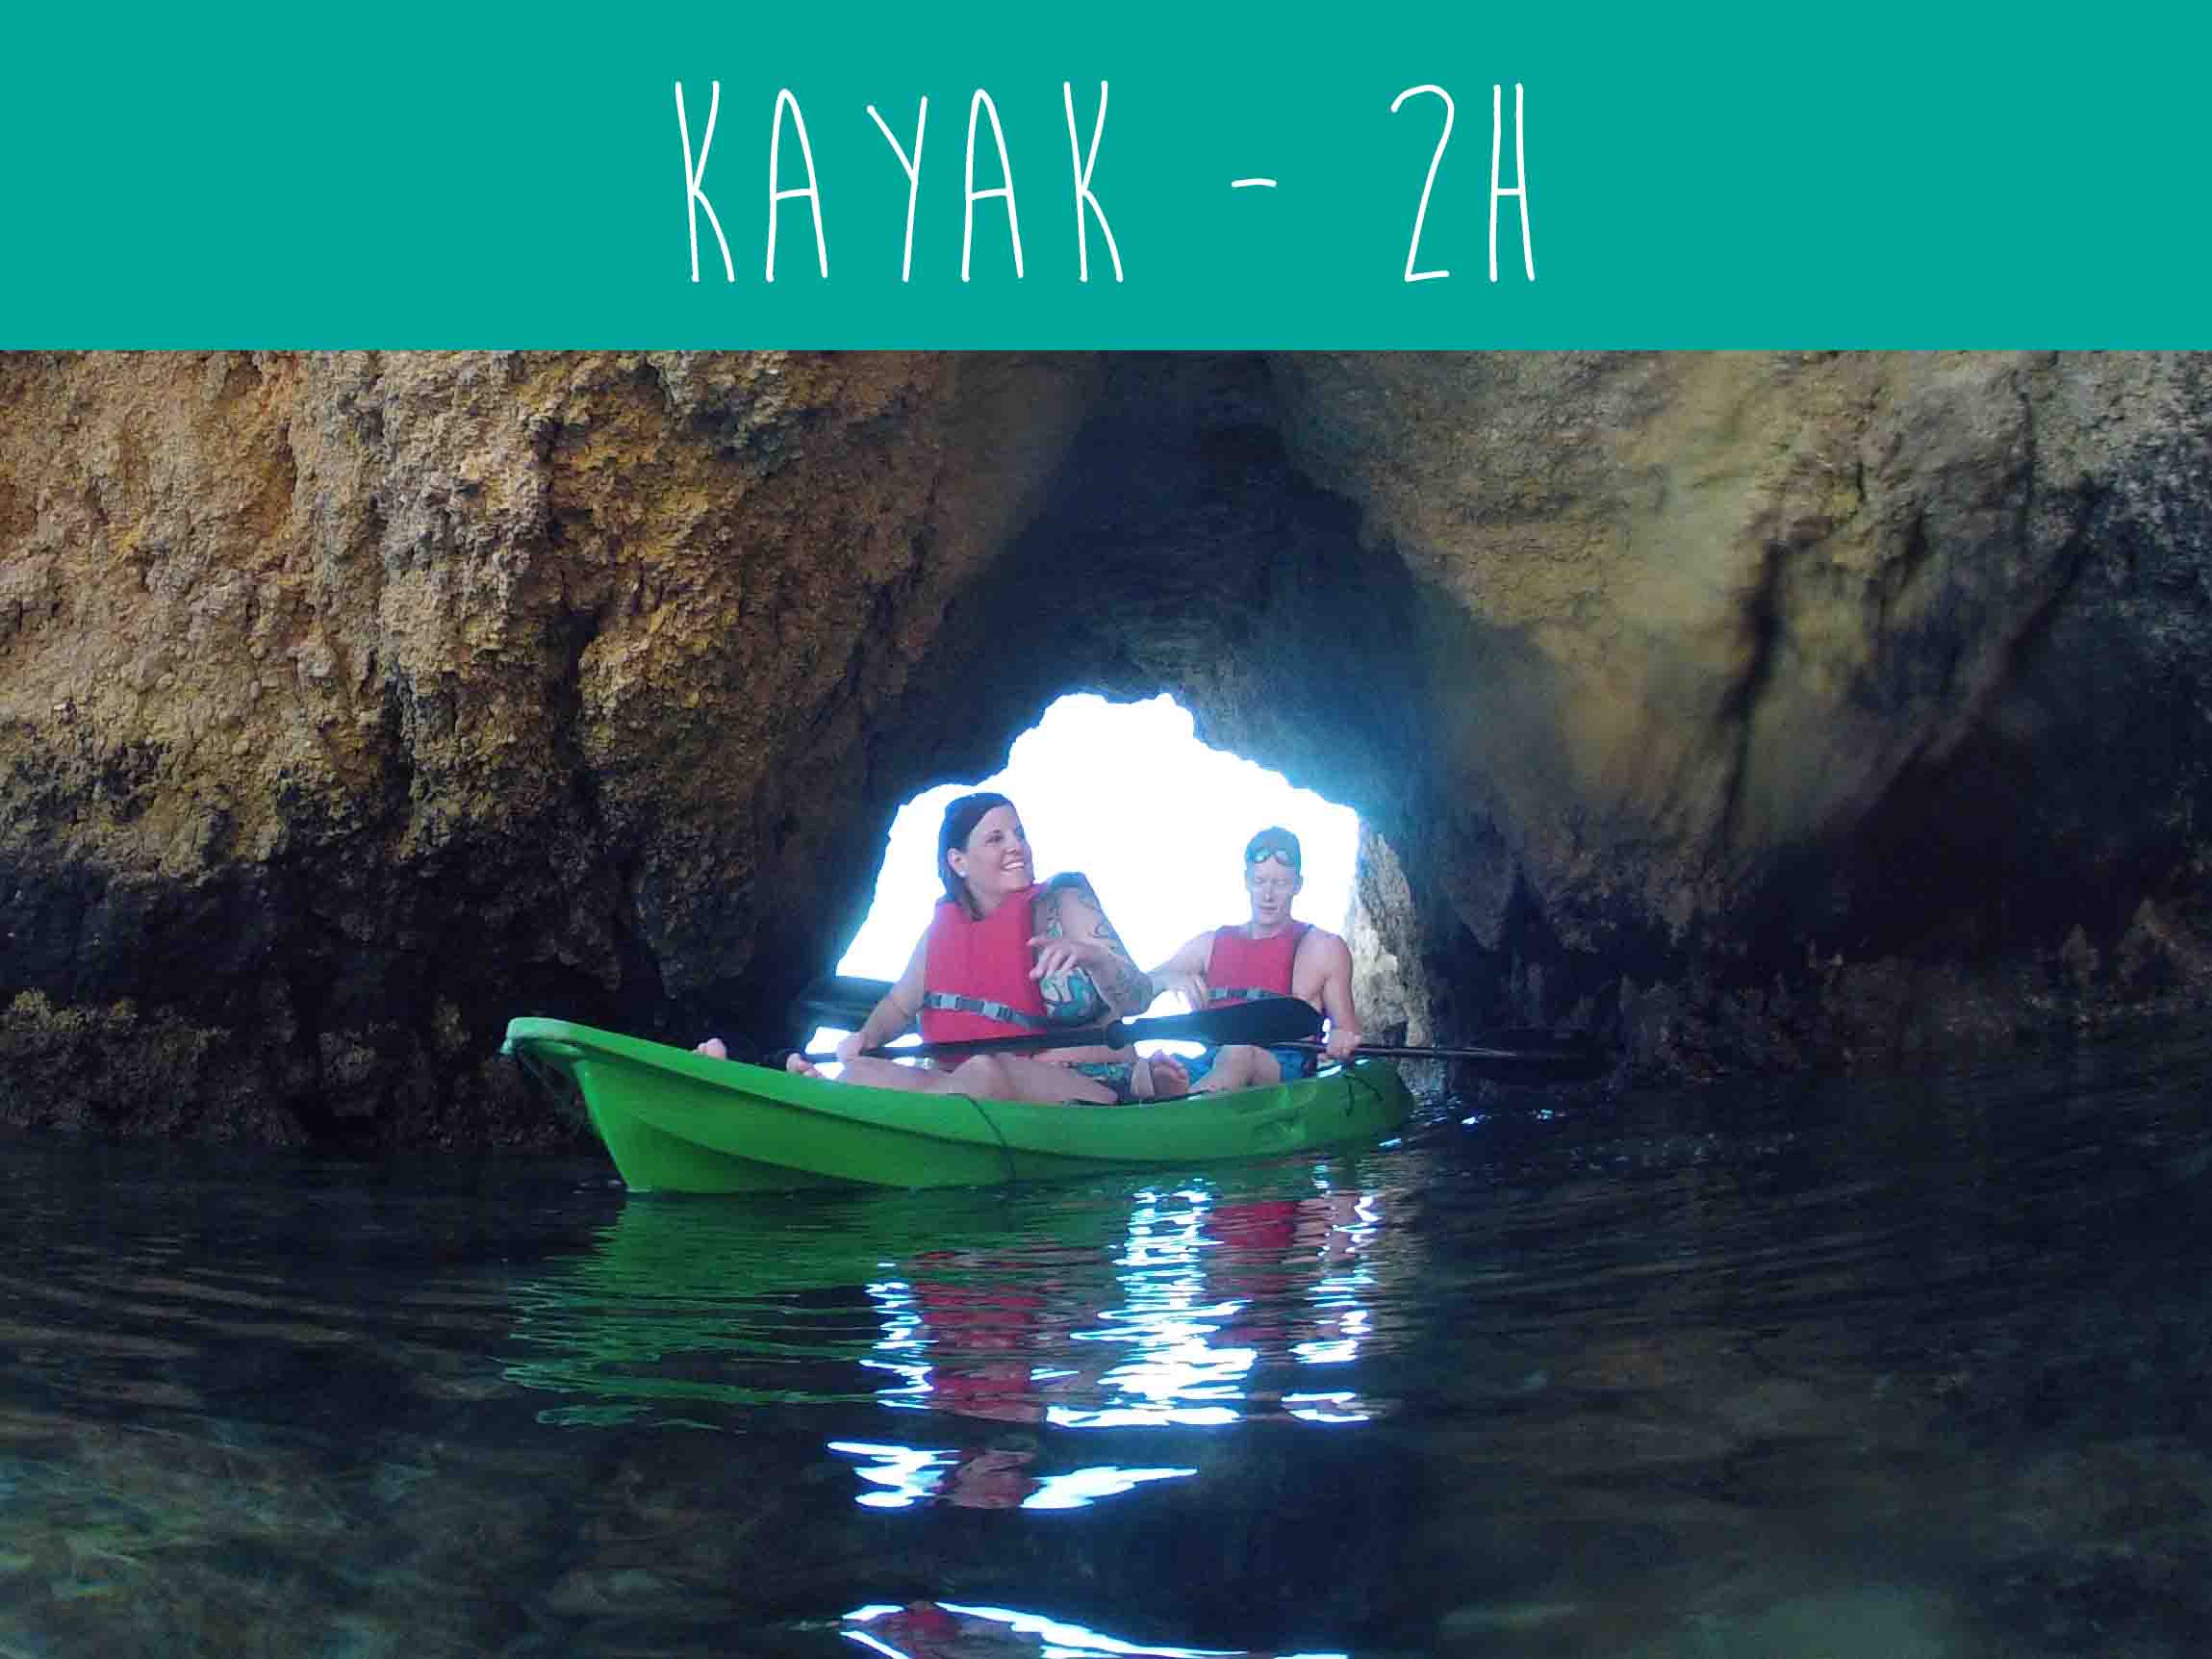 Kayak trip with wildwatch Algarve boat trips